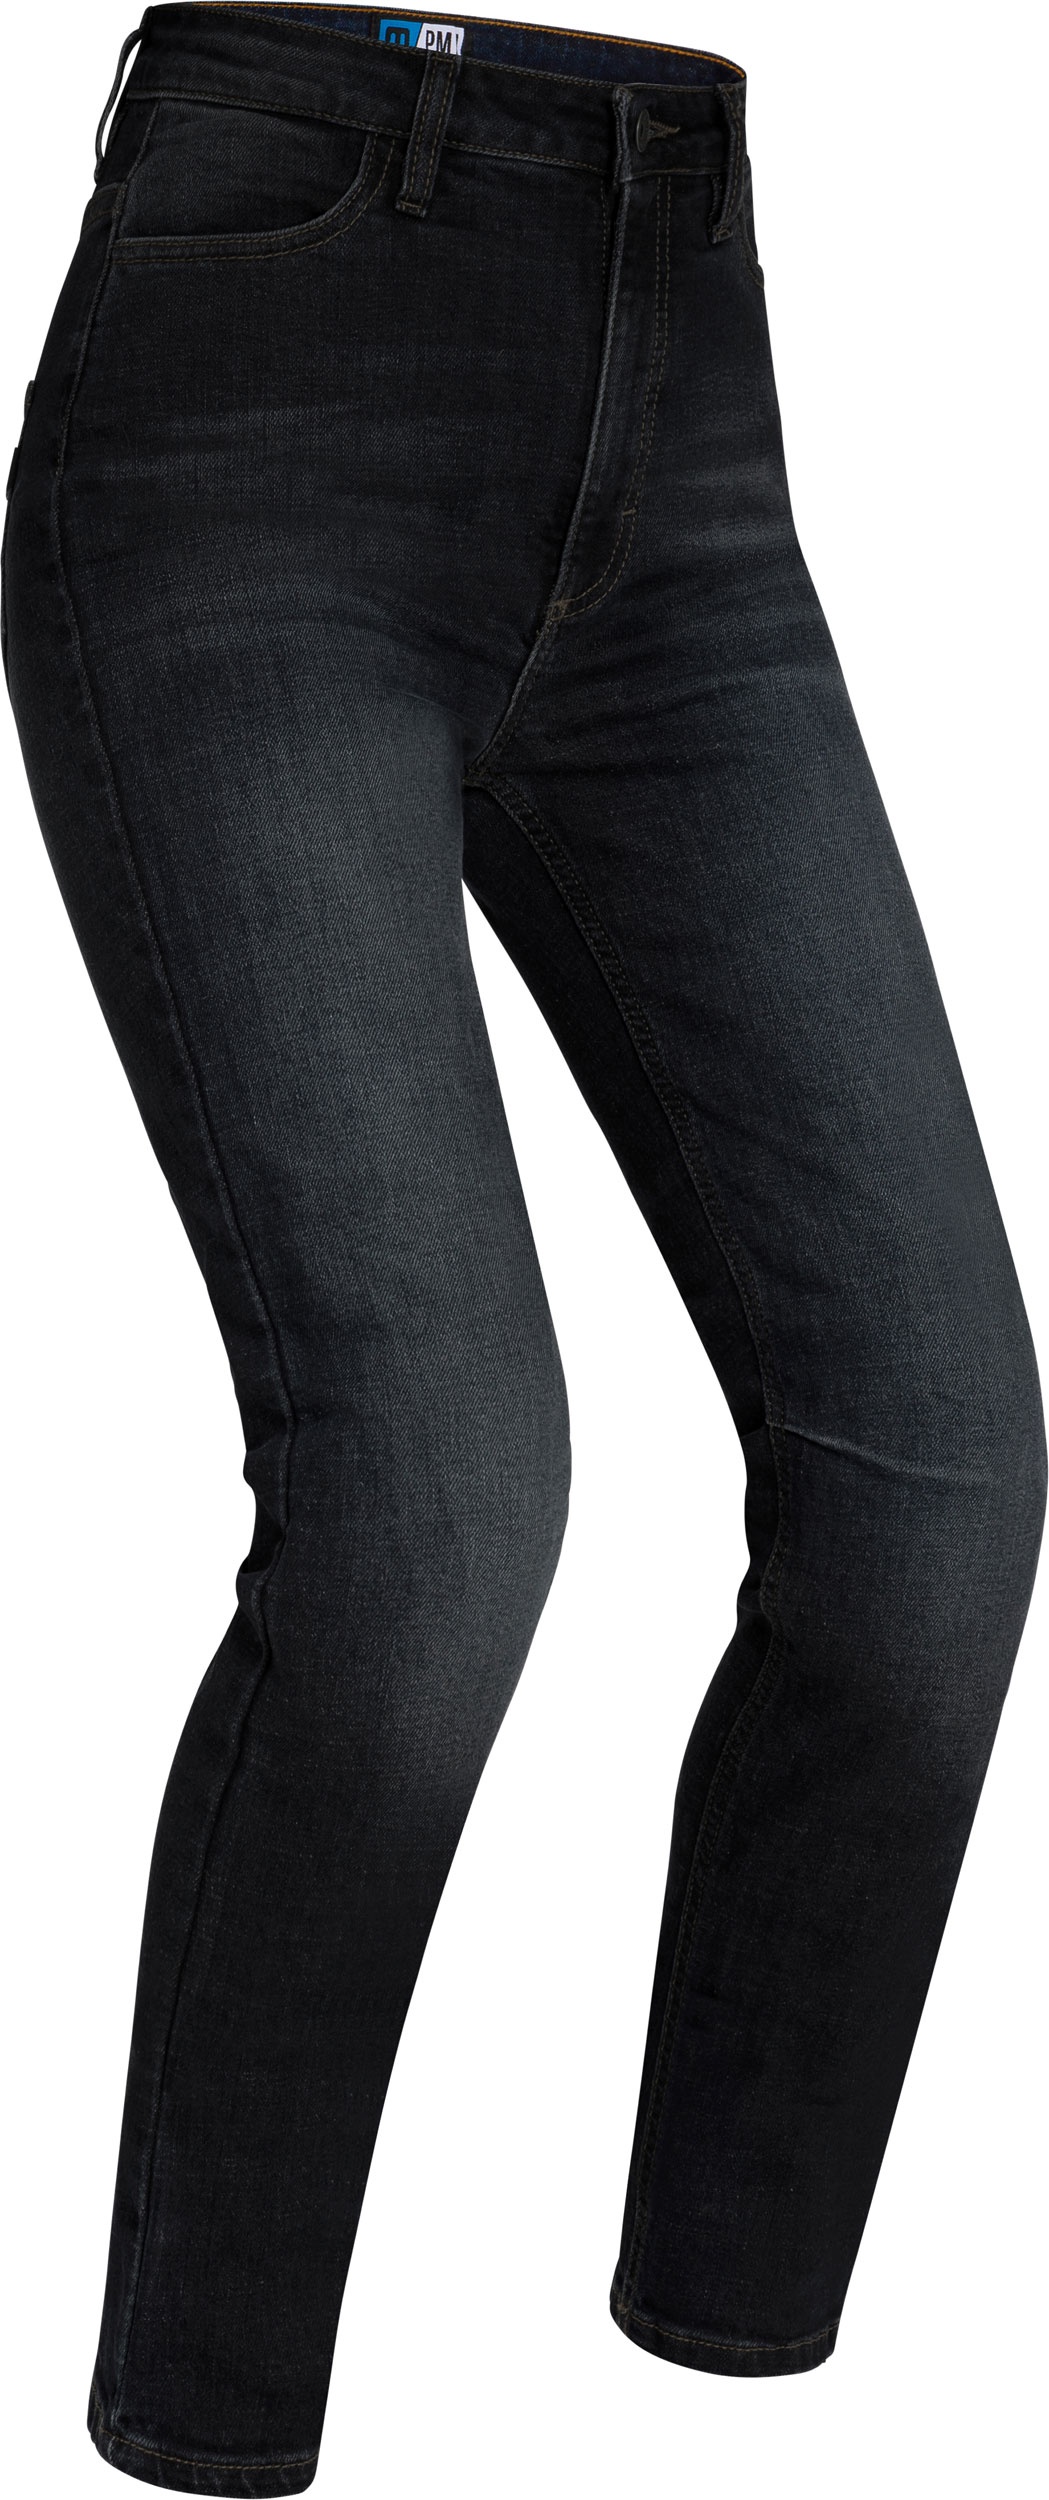 PMJ Sara, jeans femmes - Noir - 30